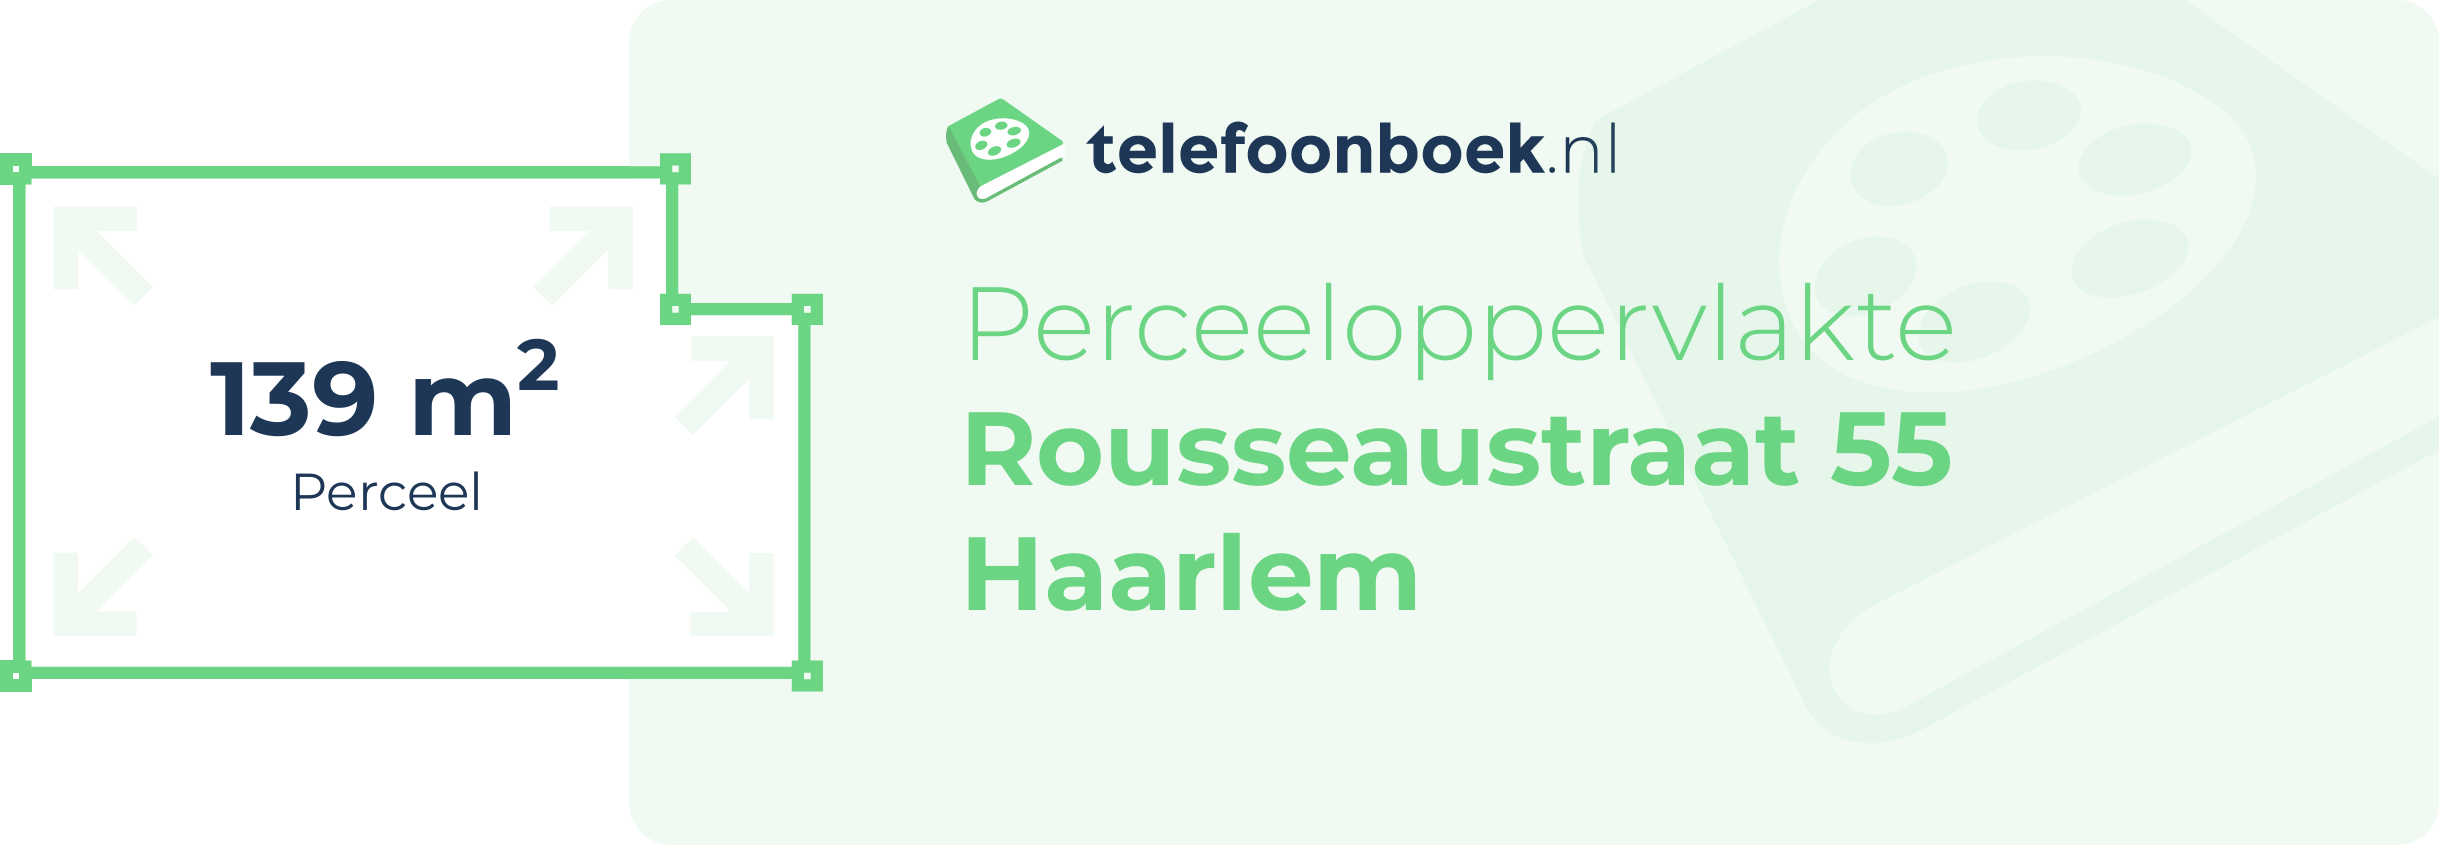 Perceeloppervlakte Rousseaustraat 55 Haarlem